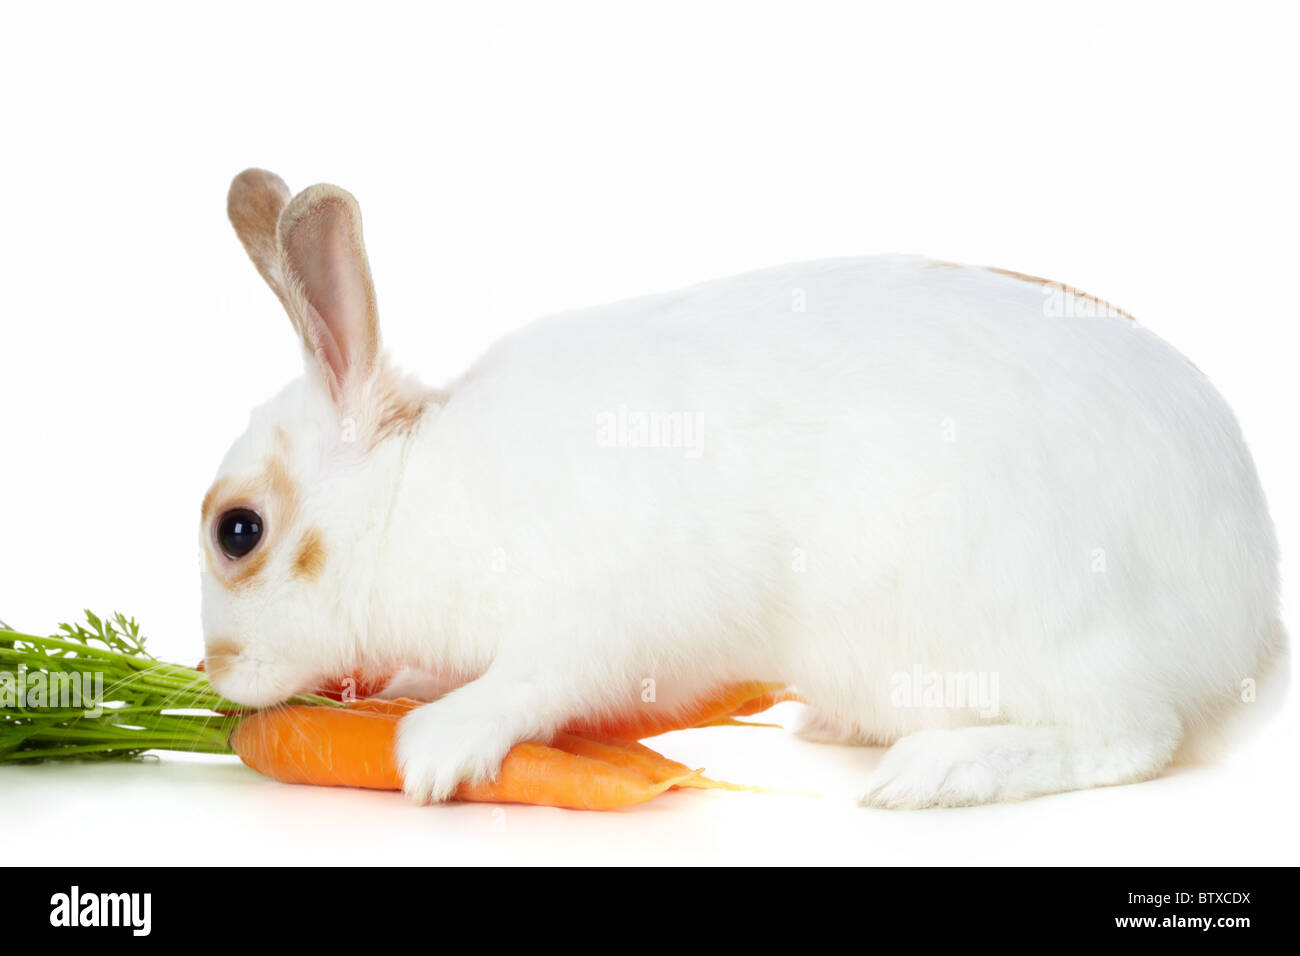 Immagine di cauto coniglio con succose carote seduta in isolamento Foto Stock